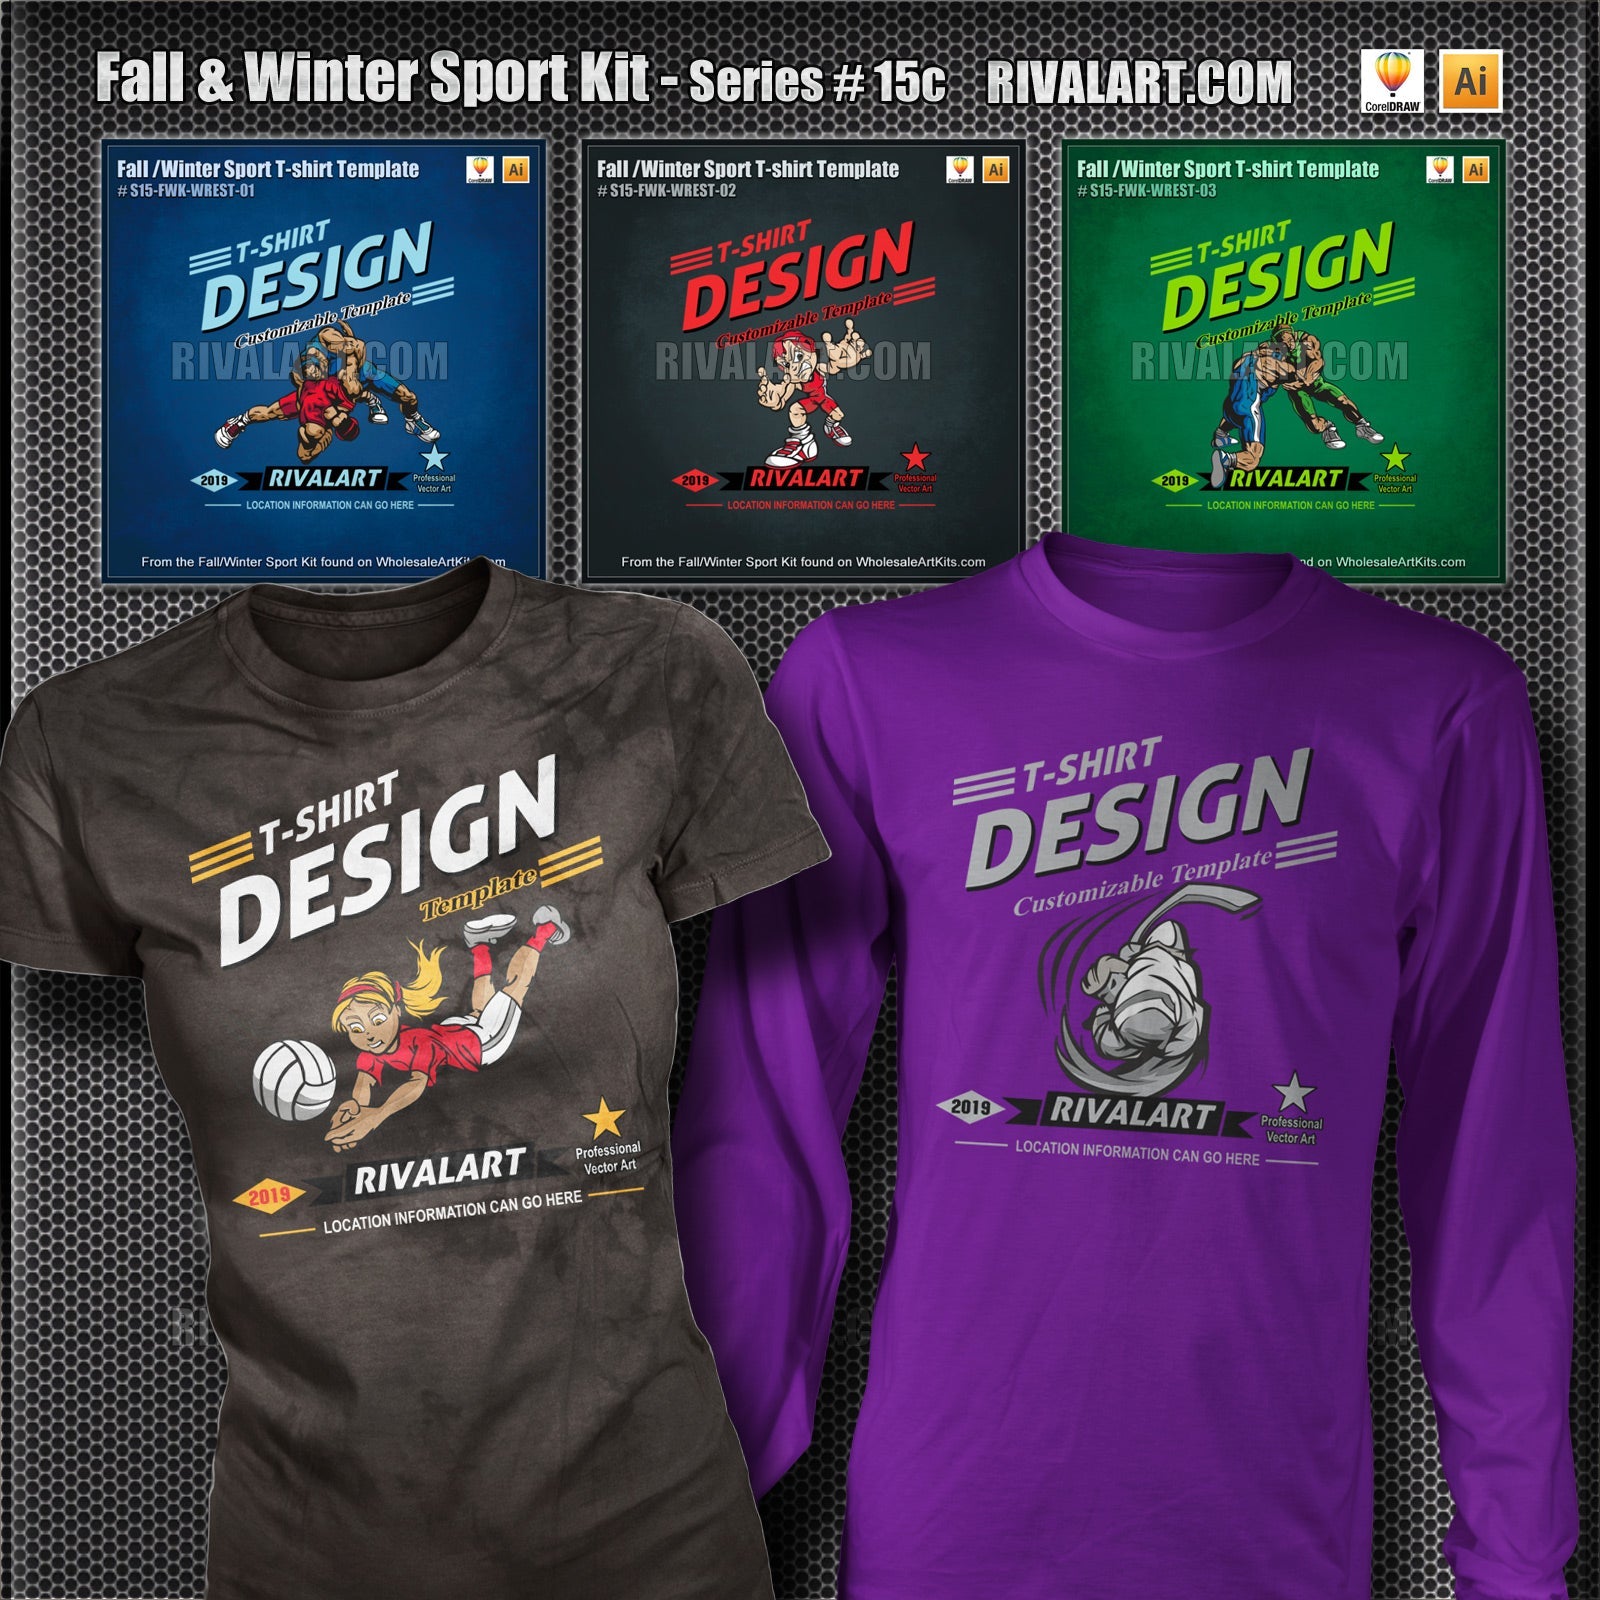 Fall & Winter Sport Kit Bundle for Adobe Illustrator